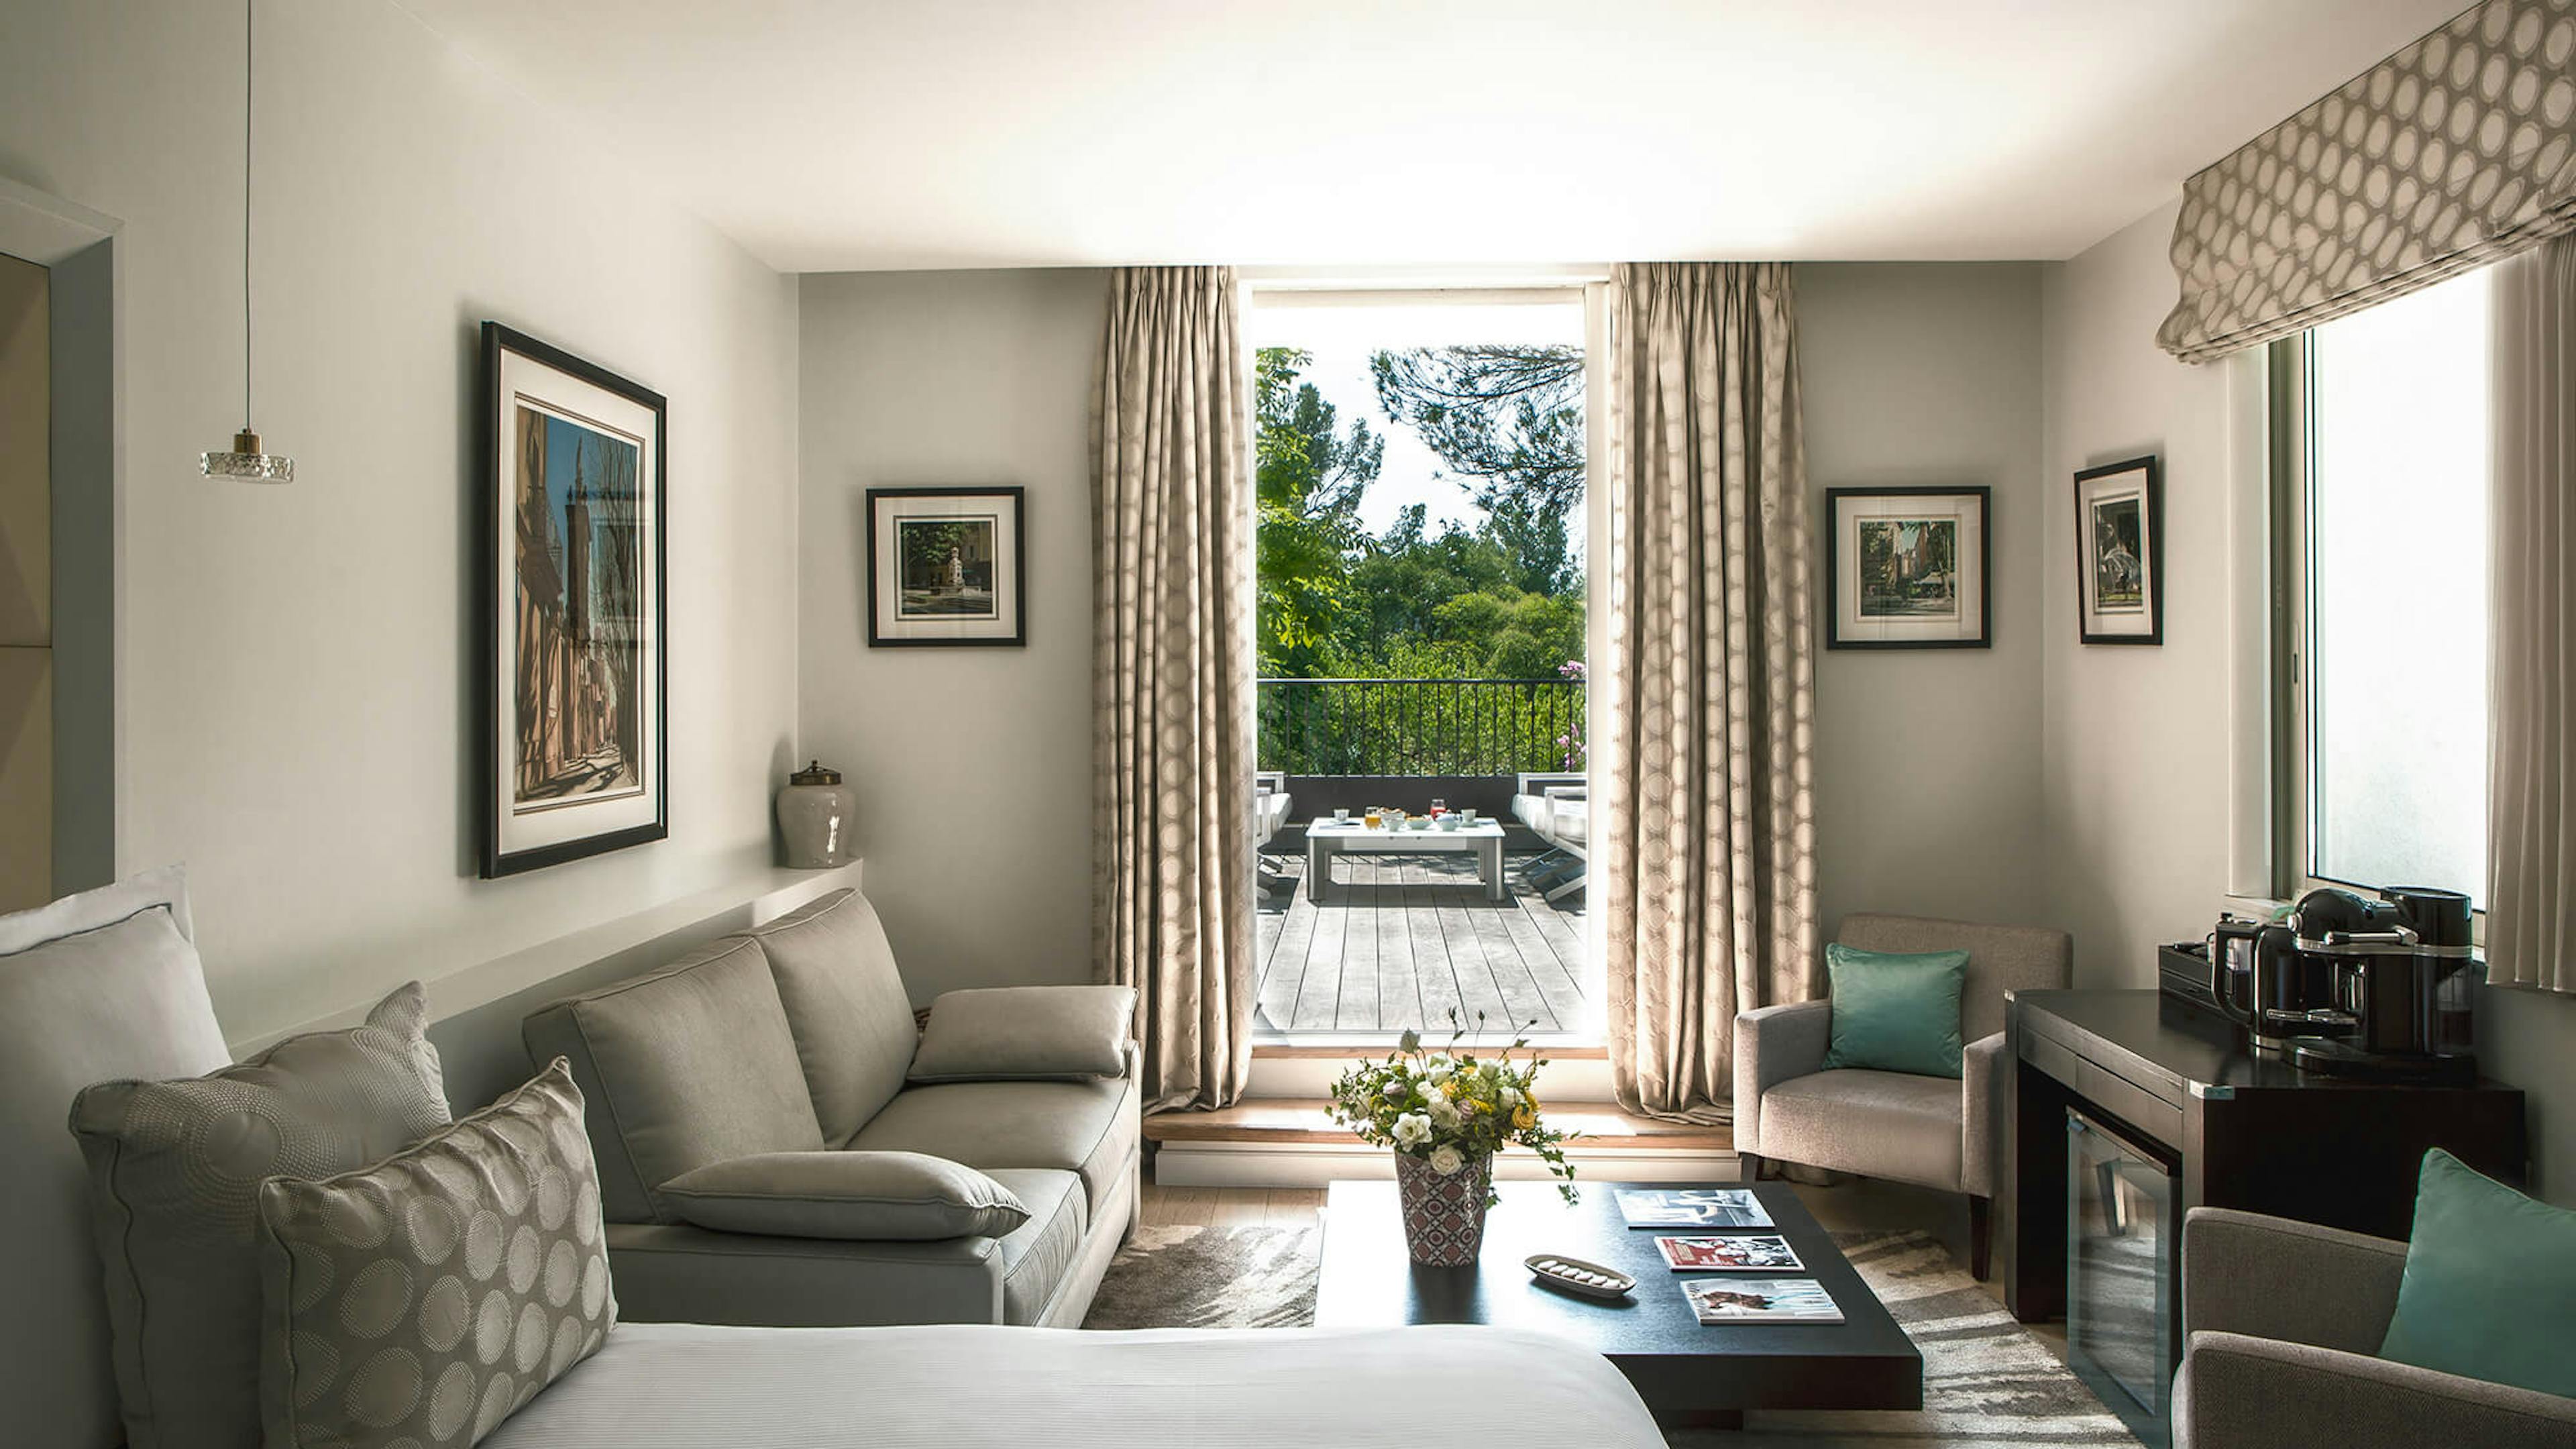 Junior Suite with terrace garden view Hotel Le Pigonnet 5 stars Aix-en-Provence